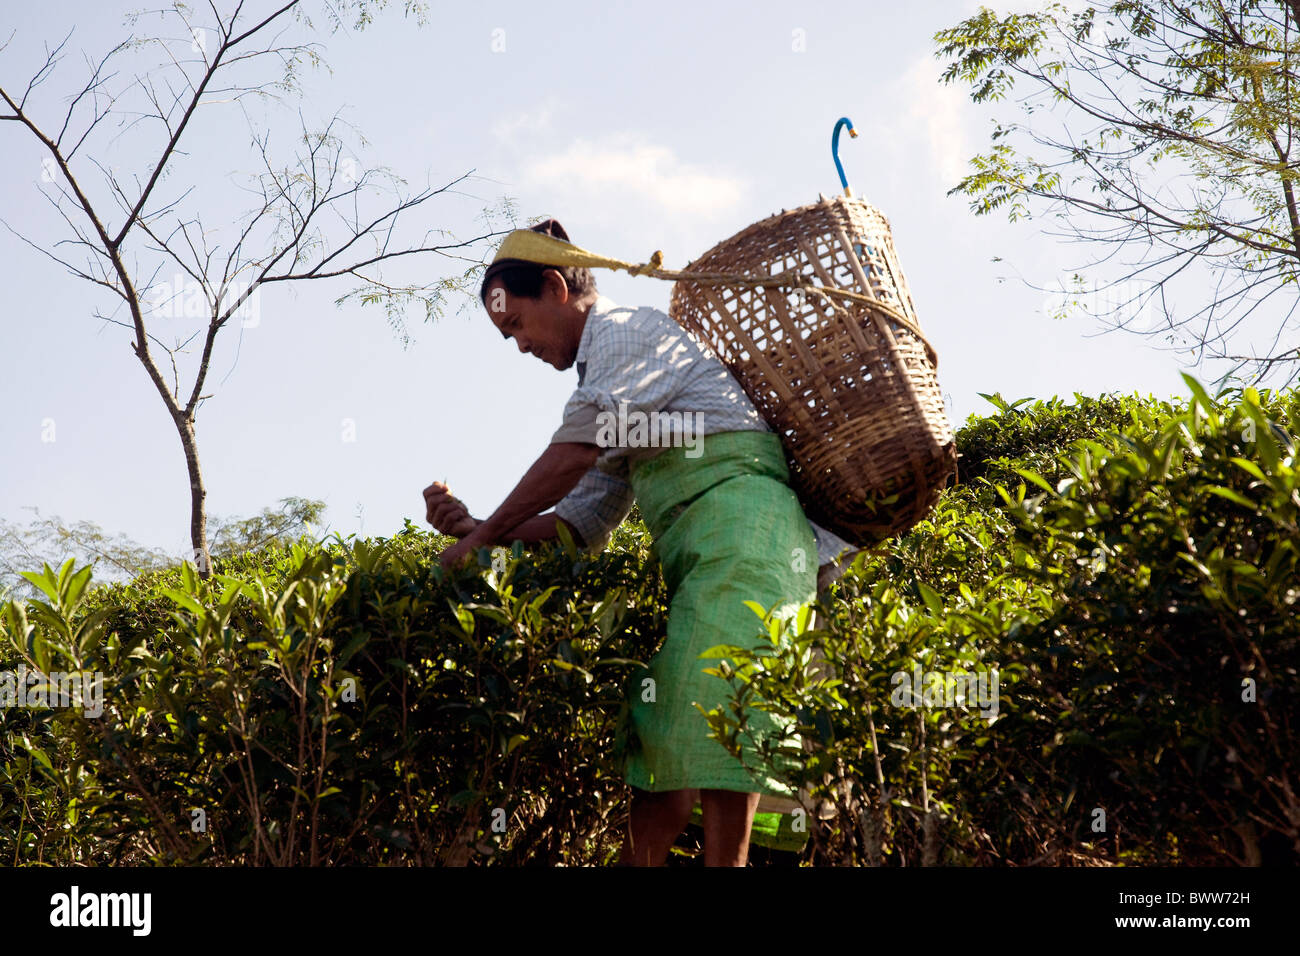 Auf weitläufigen Tees zupfen Plantagen in der Nähe von Darjeeling Arbeiter ein paar frische Blätter aus jedem Strauch Stockfoto